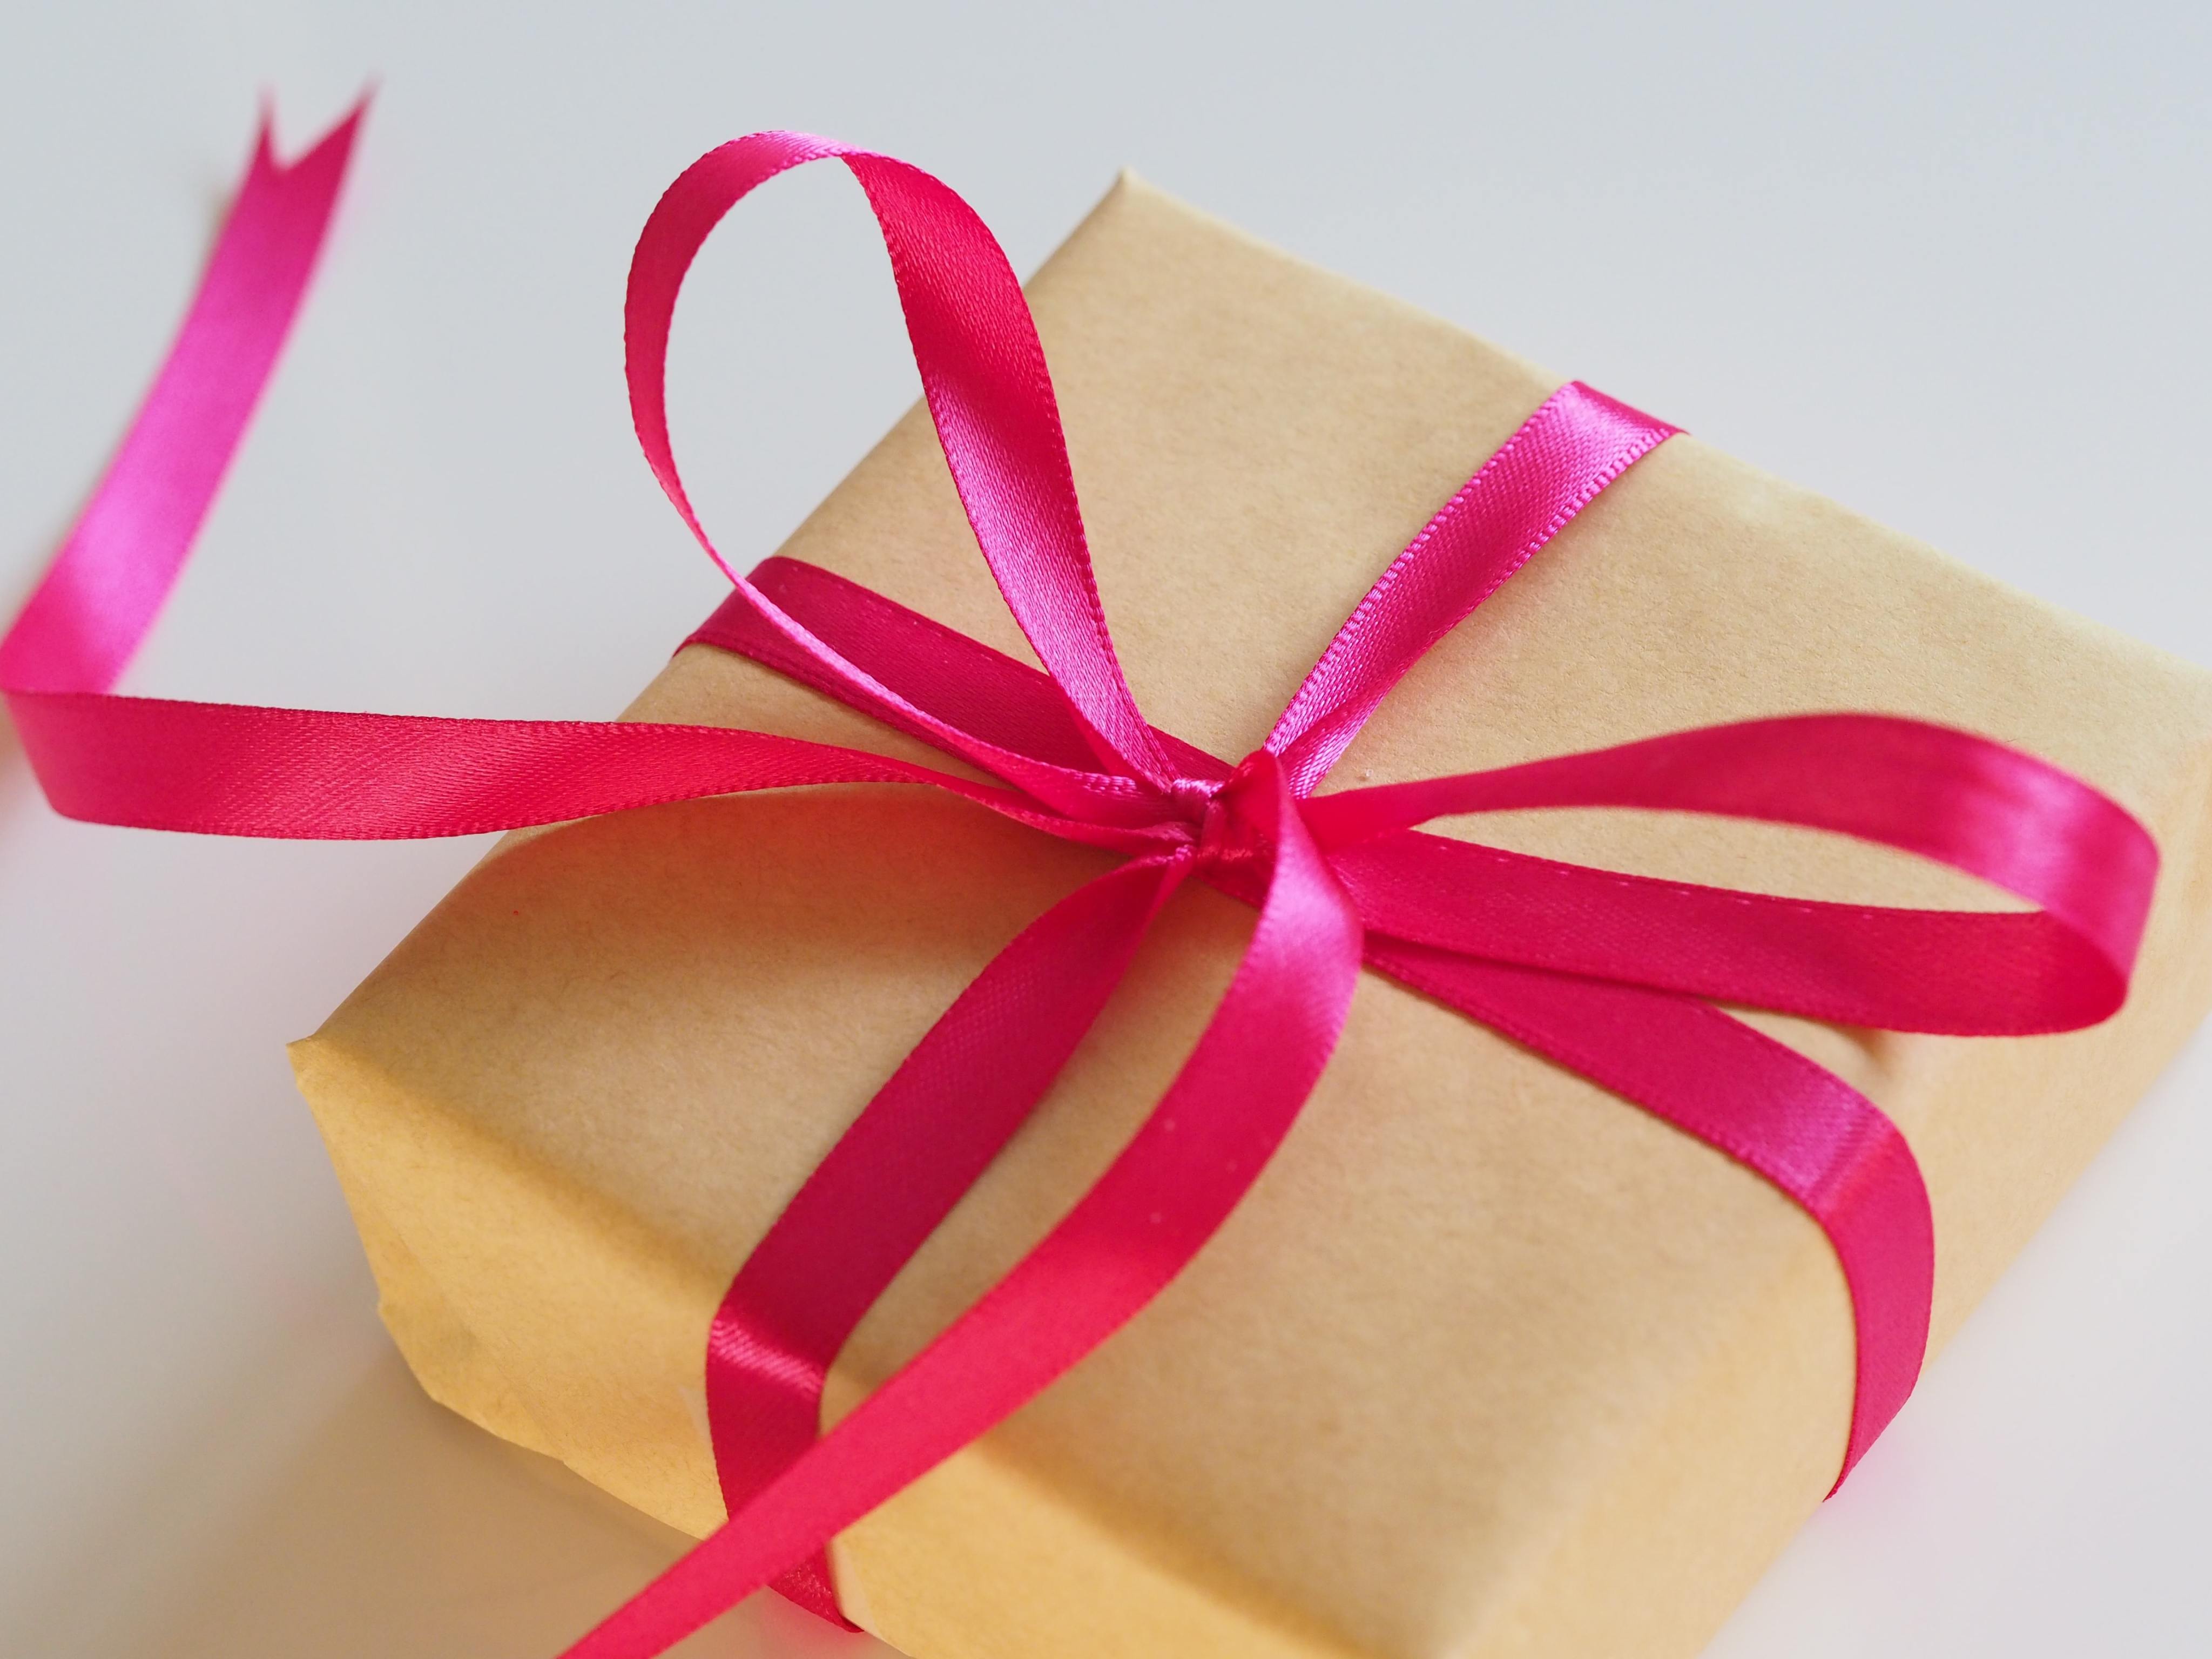 parrilla Críticamente Lidiar con Amazon Prime Day: cómo comprar, mandar un regalo y que se sepa quién lo  envió - Solo Dinero